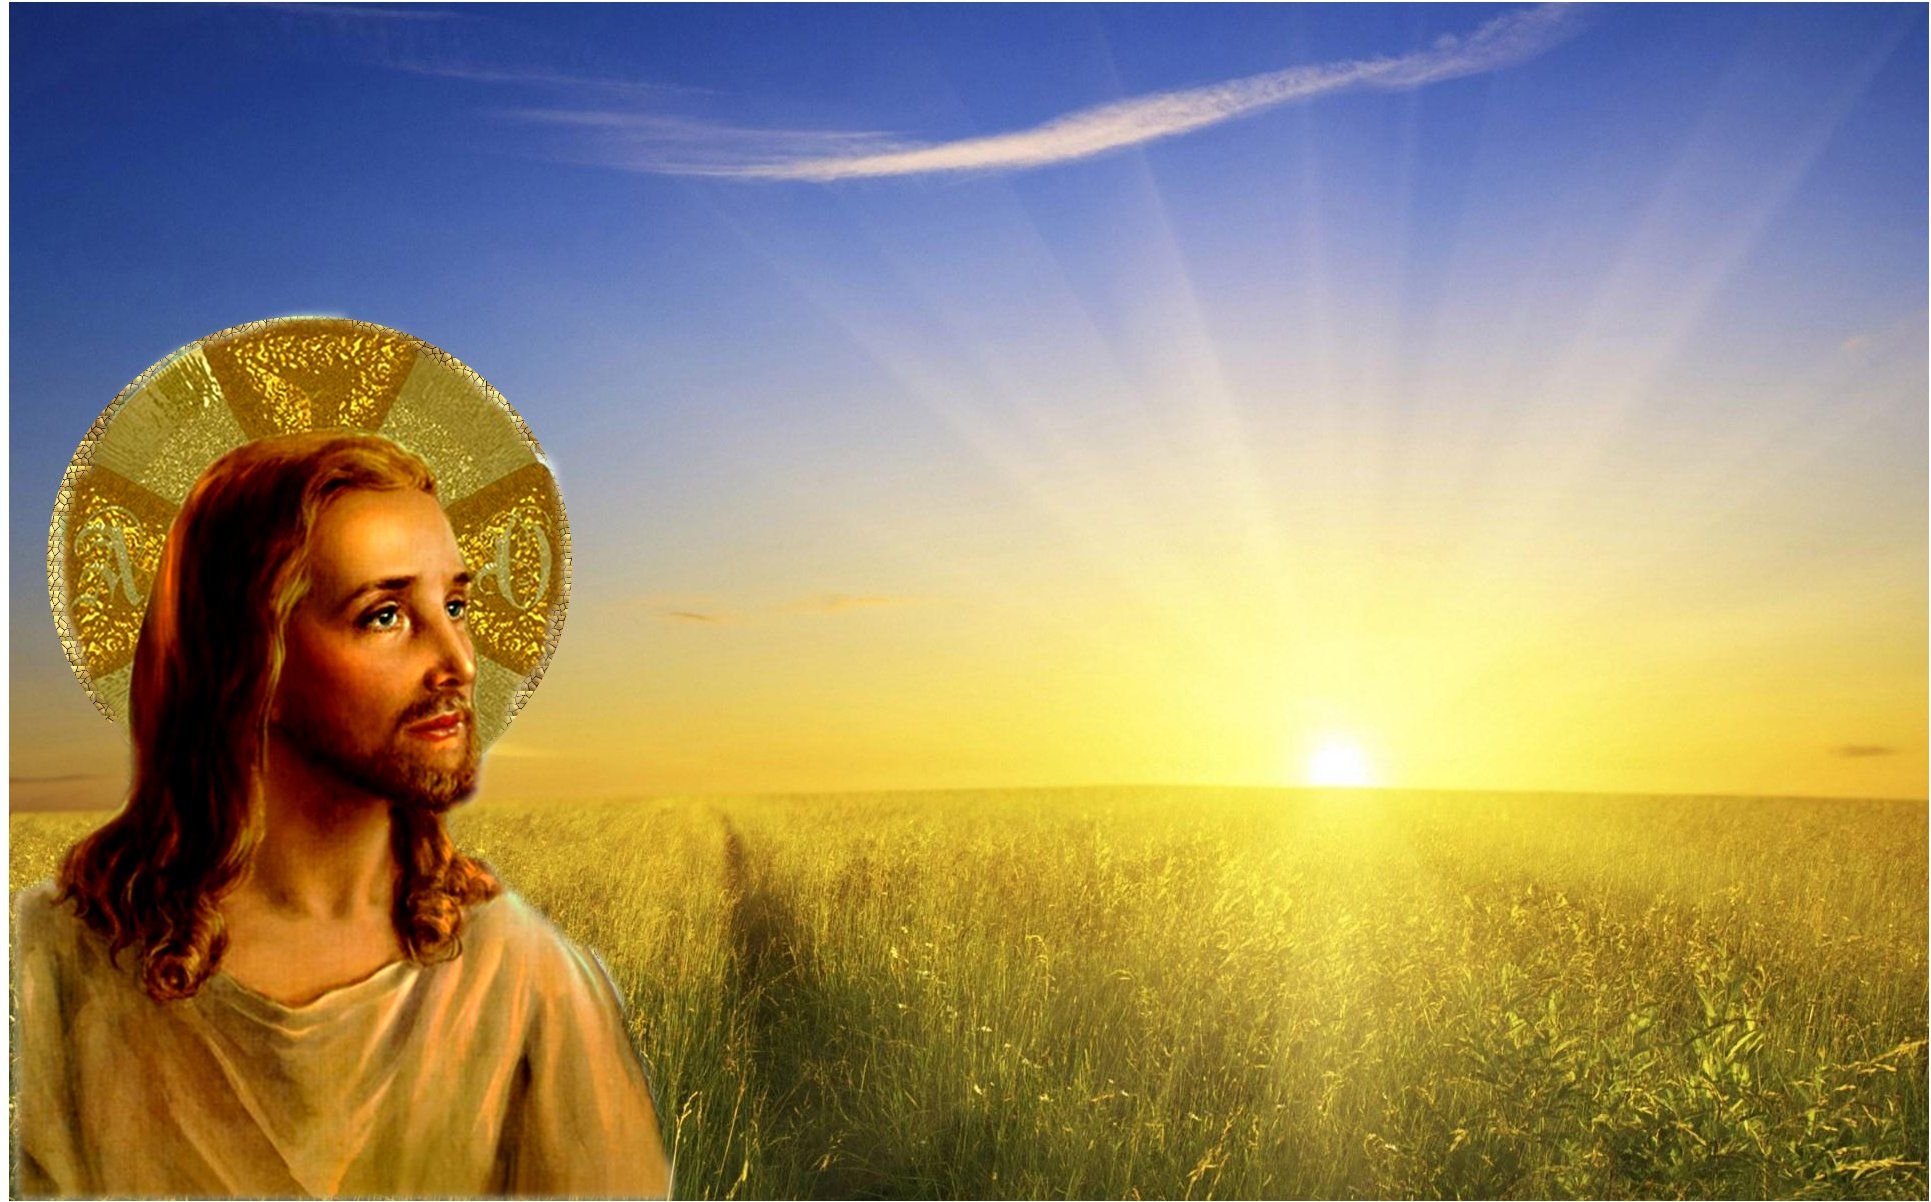 Jesuschrist Background Image